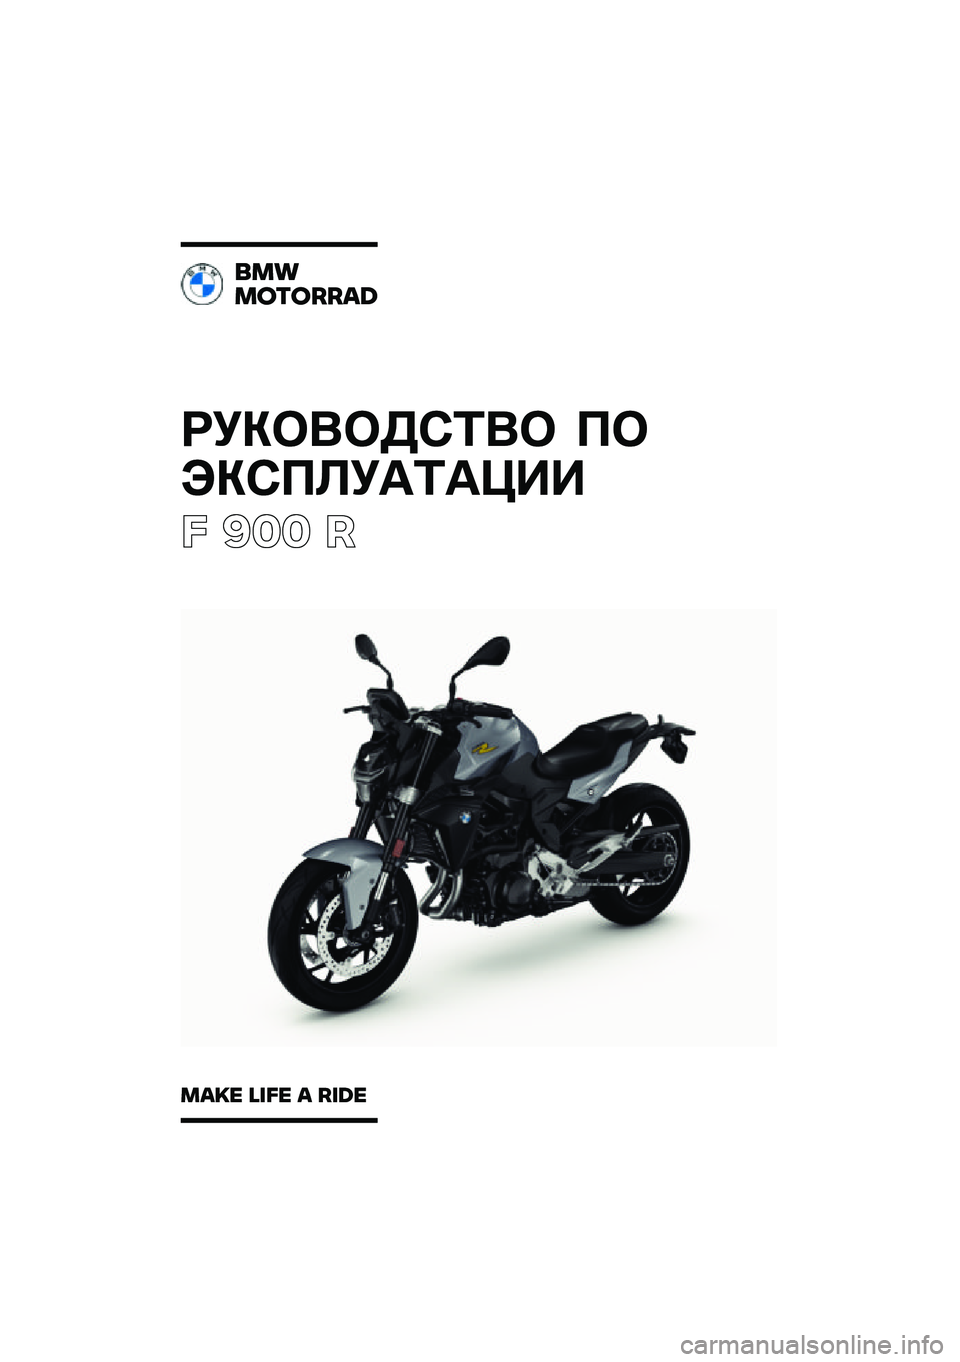 BMW MOTORRAD F 900 R 2021  Руководство по эксплуатации (in Russian) ��������\b�	�� �
�
���\b�
�\f��
�	�
���
� ��� �
���
�������\b�	
��\b�
� �\f�
�� �\b ��
�	� 